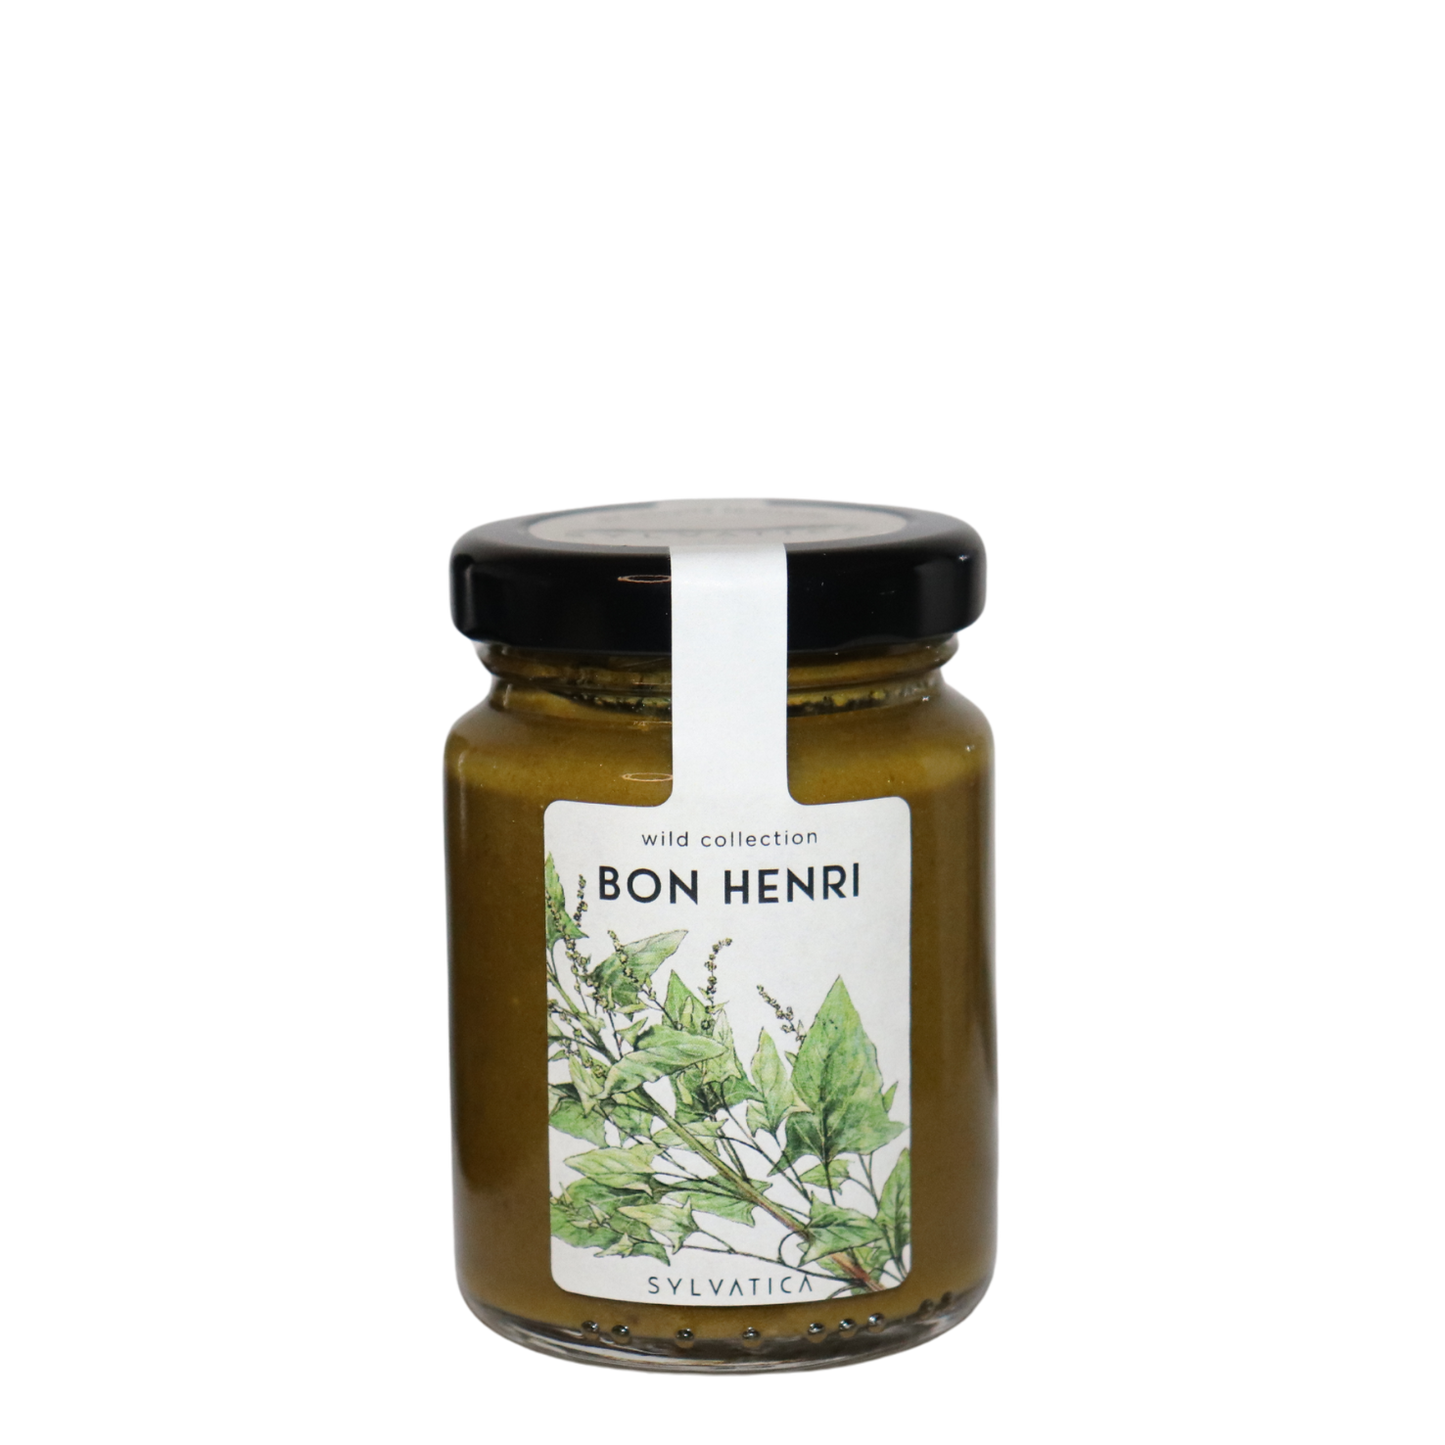 BON HENRI mountain spinach cream - Sylvatica